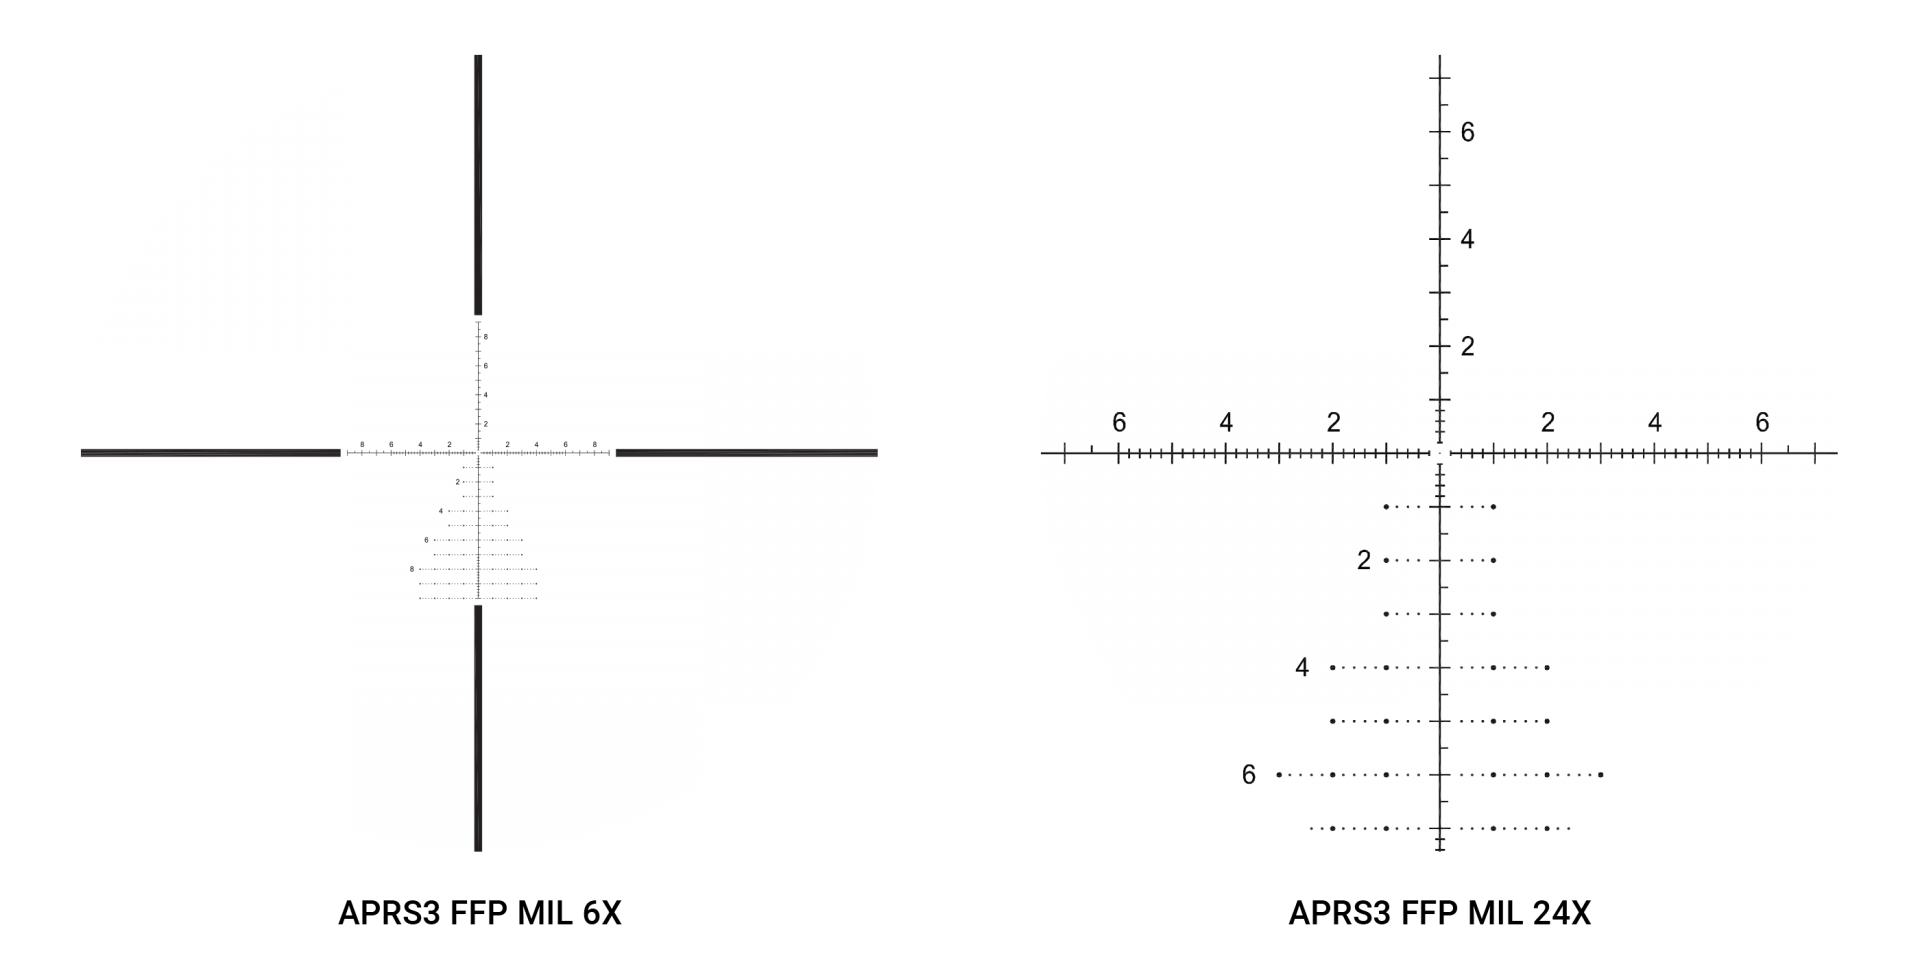 lunette de visée de tir avec zoom à réticule lumineux 2-6x28 RTI